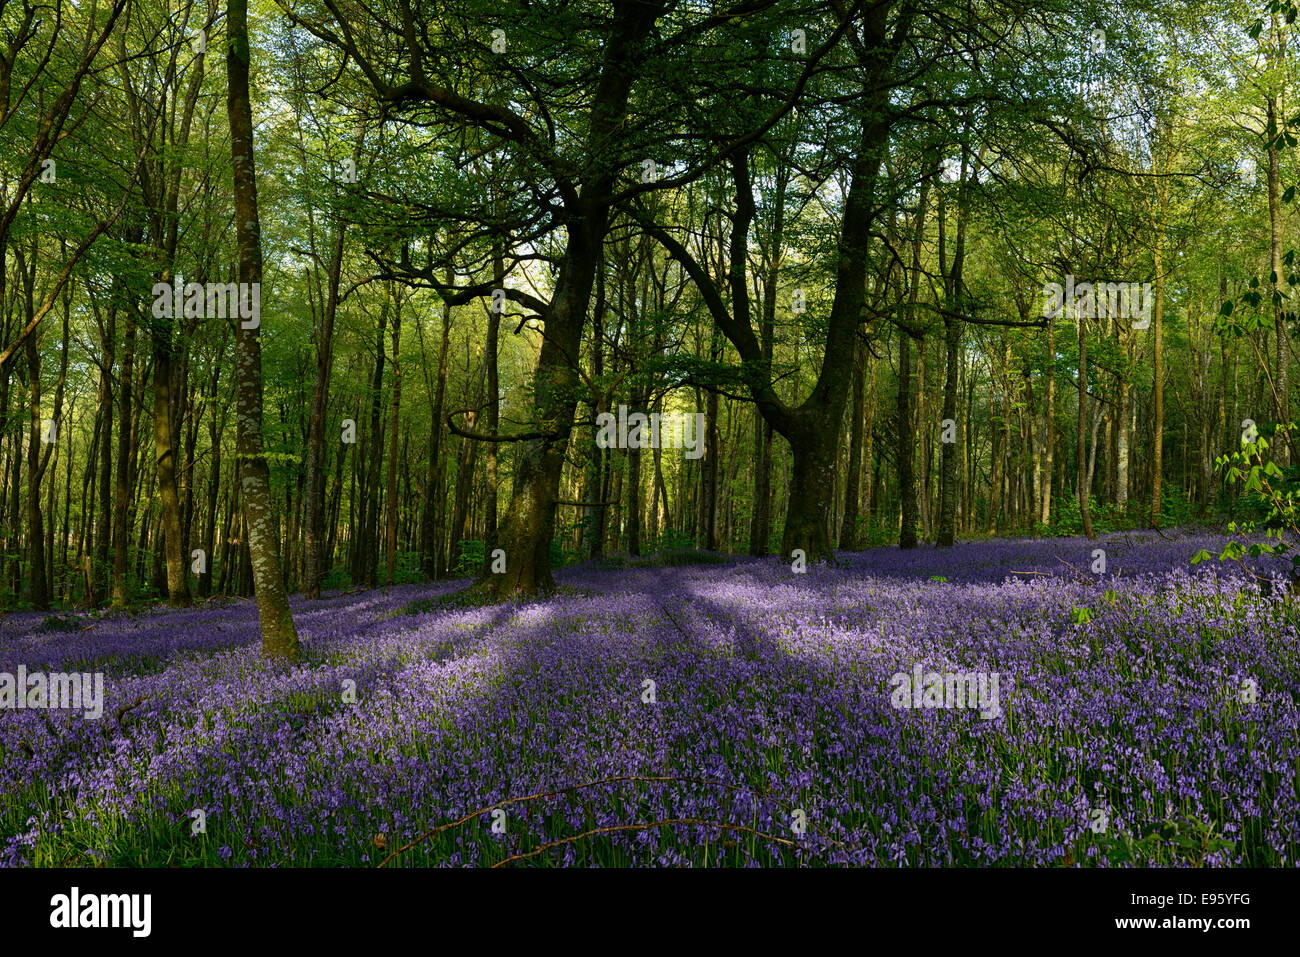 Frühling Bluebell Teppich Blume Holz Wald Wald Wäldchen Irland irische Landschaft Moore Abbey Wood Stockfoto